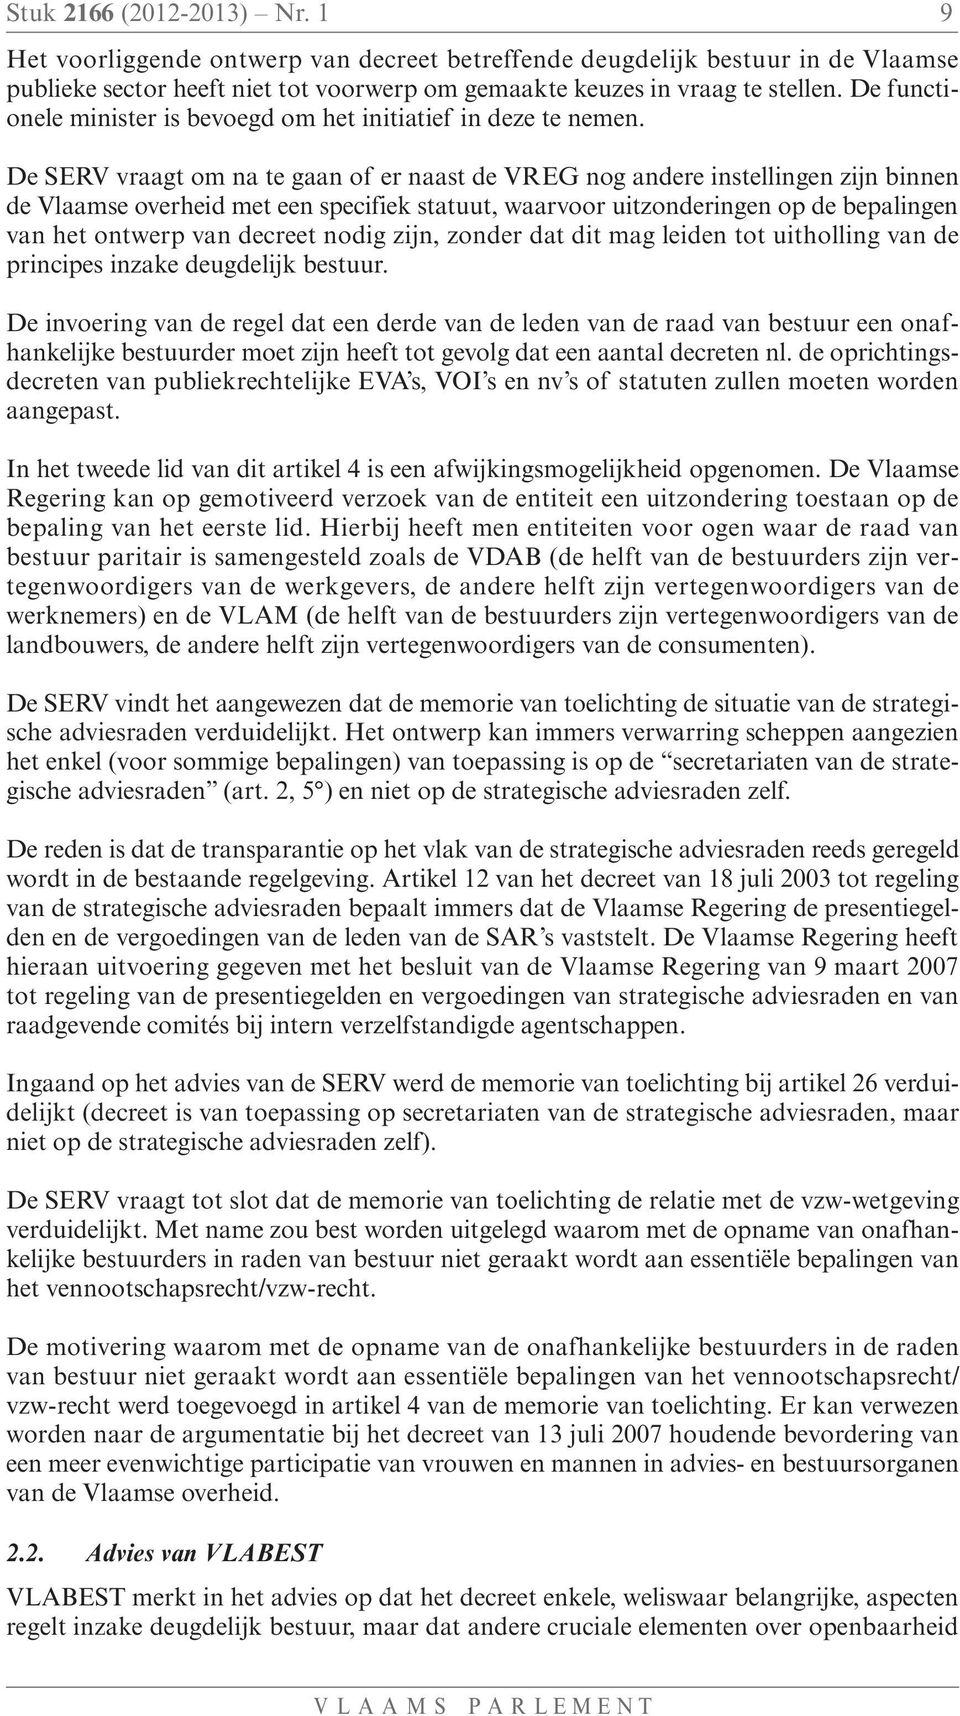 De SERV vraagt om na te gaan of er naast de VREG nog andere instellingen zijn binnen de Vlaamse overheid met een specifiek statuut, waarvoor uitzonderingen op de bepalingen van het ontwerp van